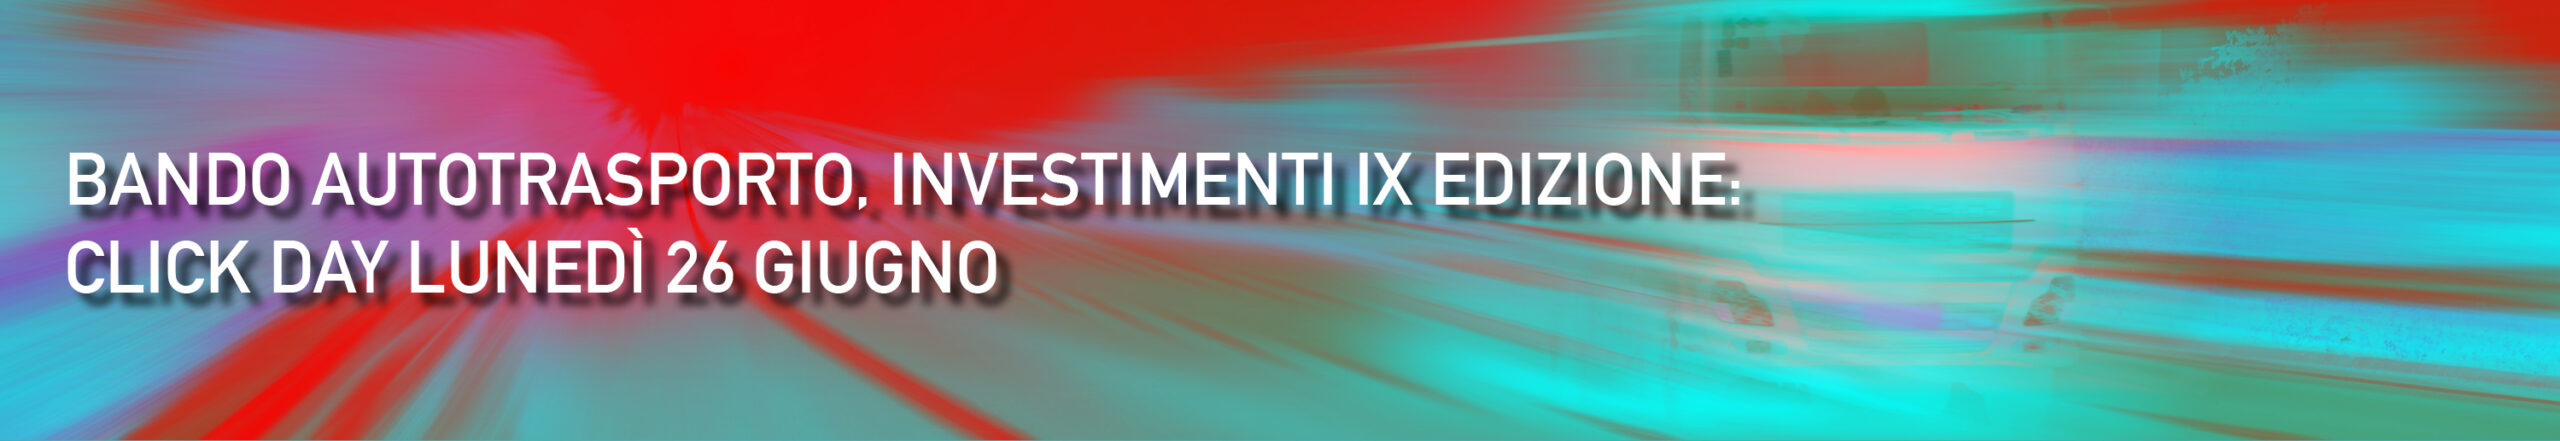 Bando autotrasporto, Investimenti IX edizione: click day lunedì 26 giugno